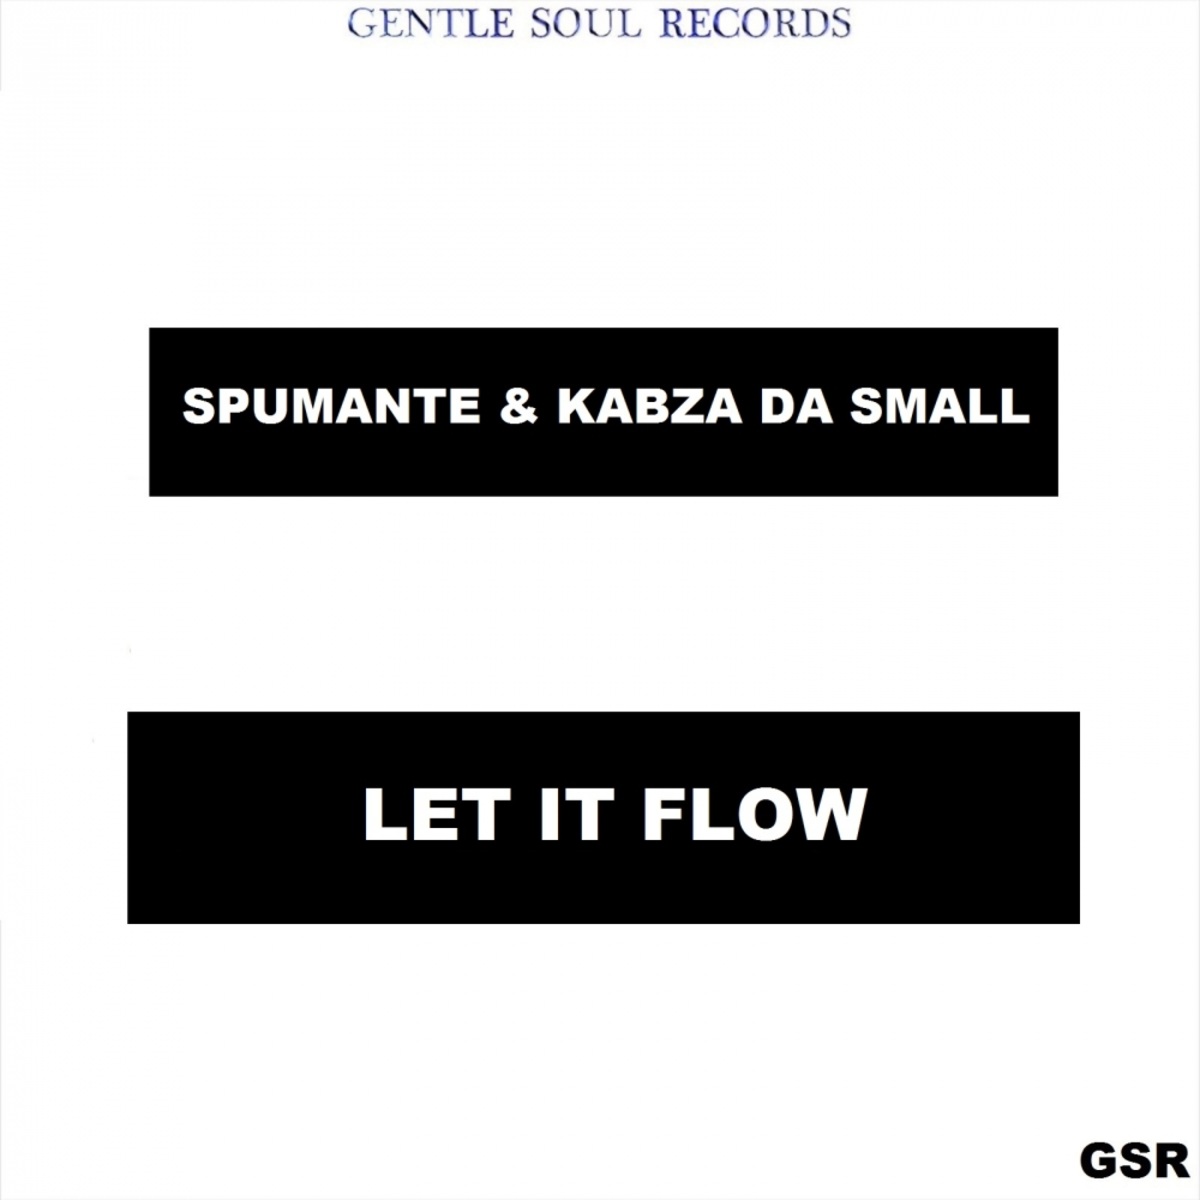 Spumante & Kabza De Small - Let It Flow / Gentle Soul Records